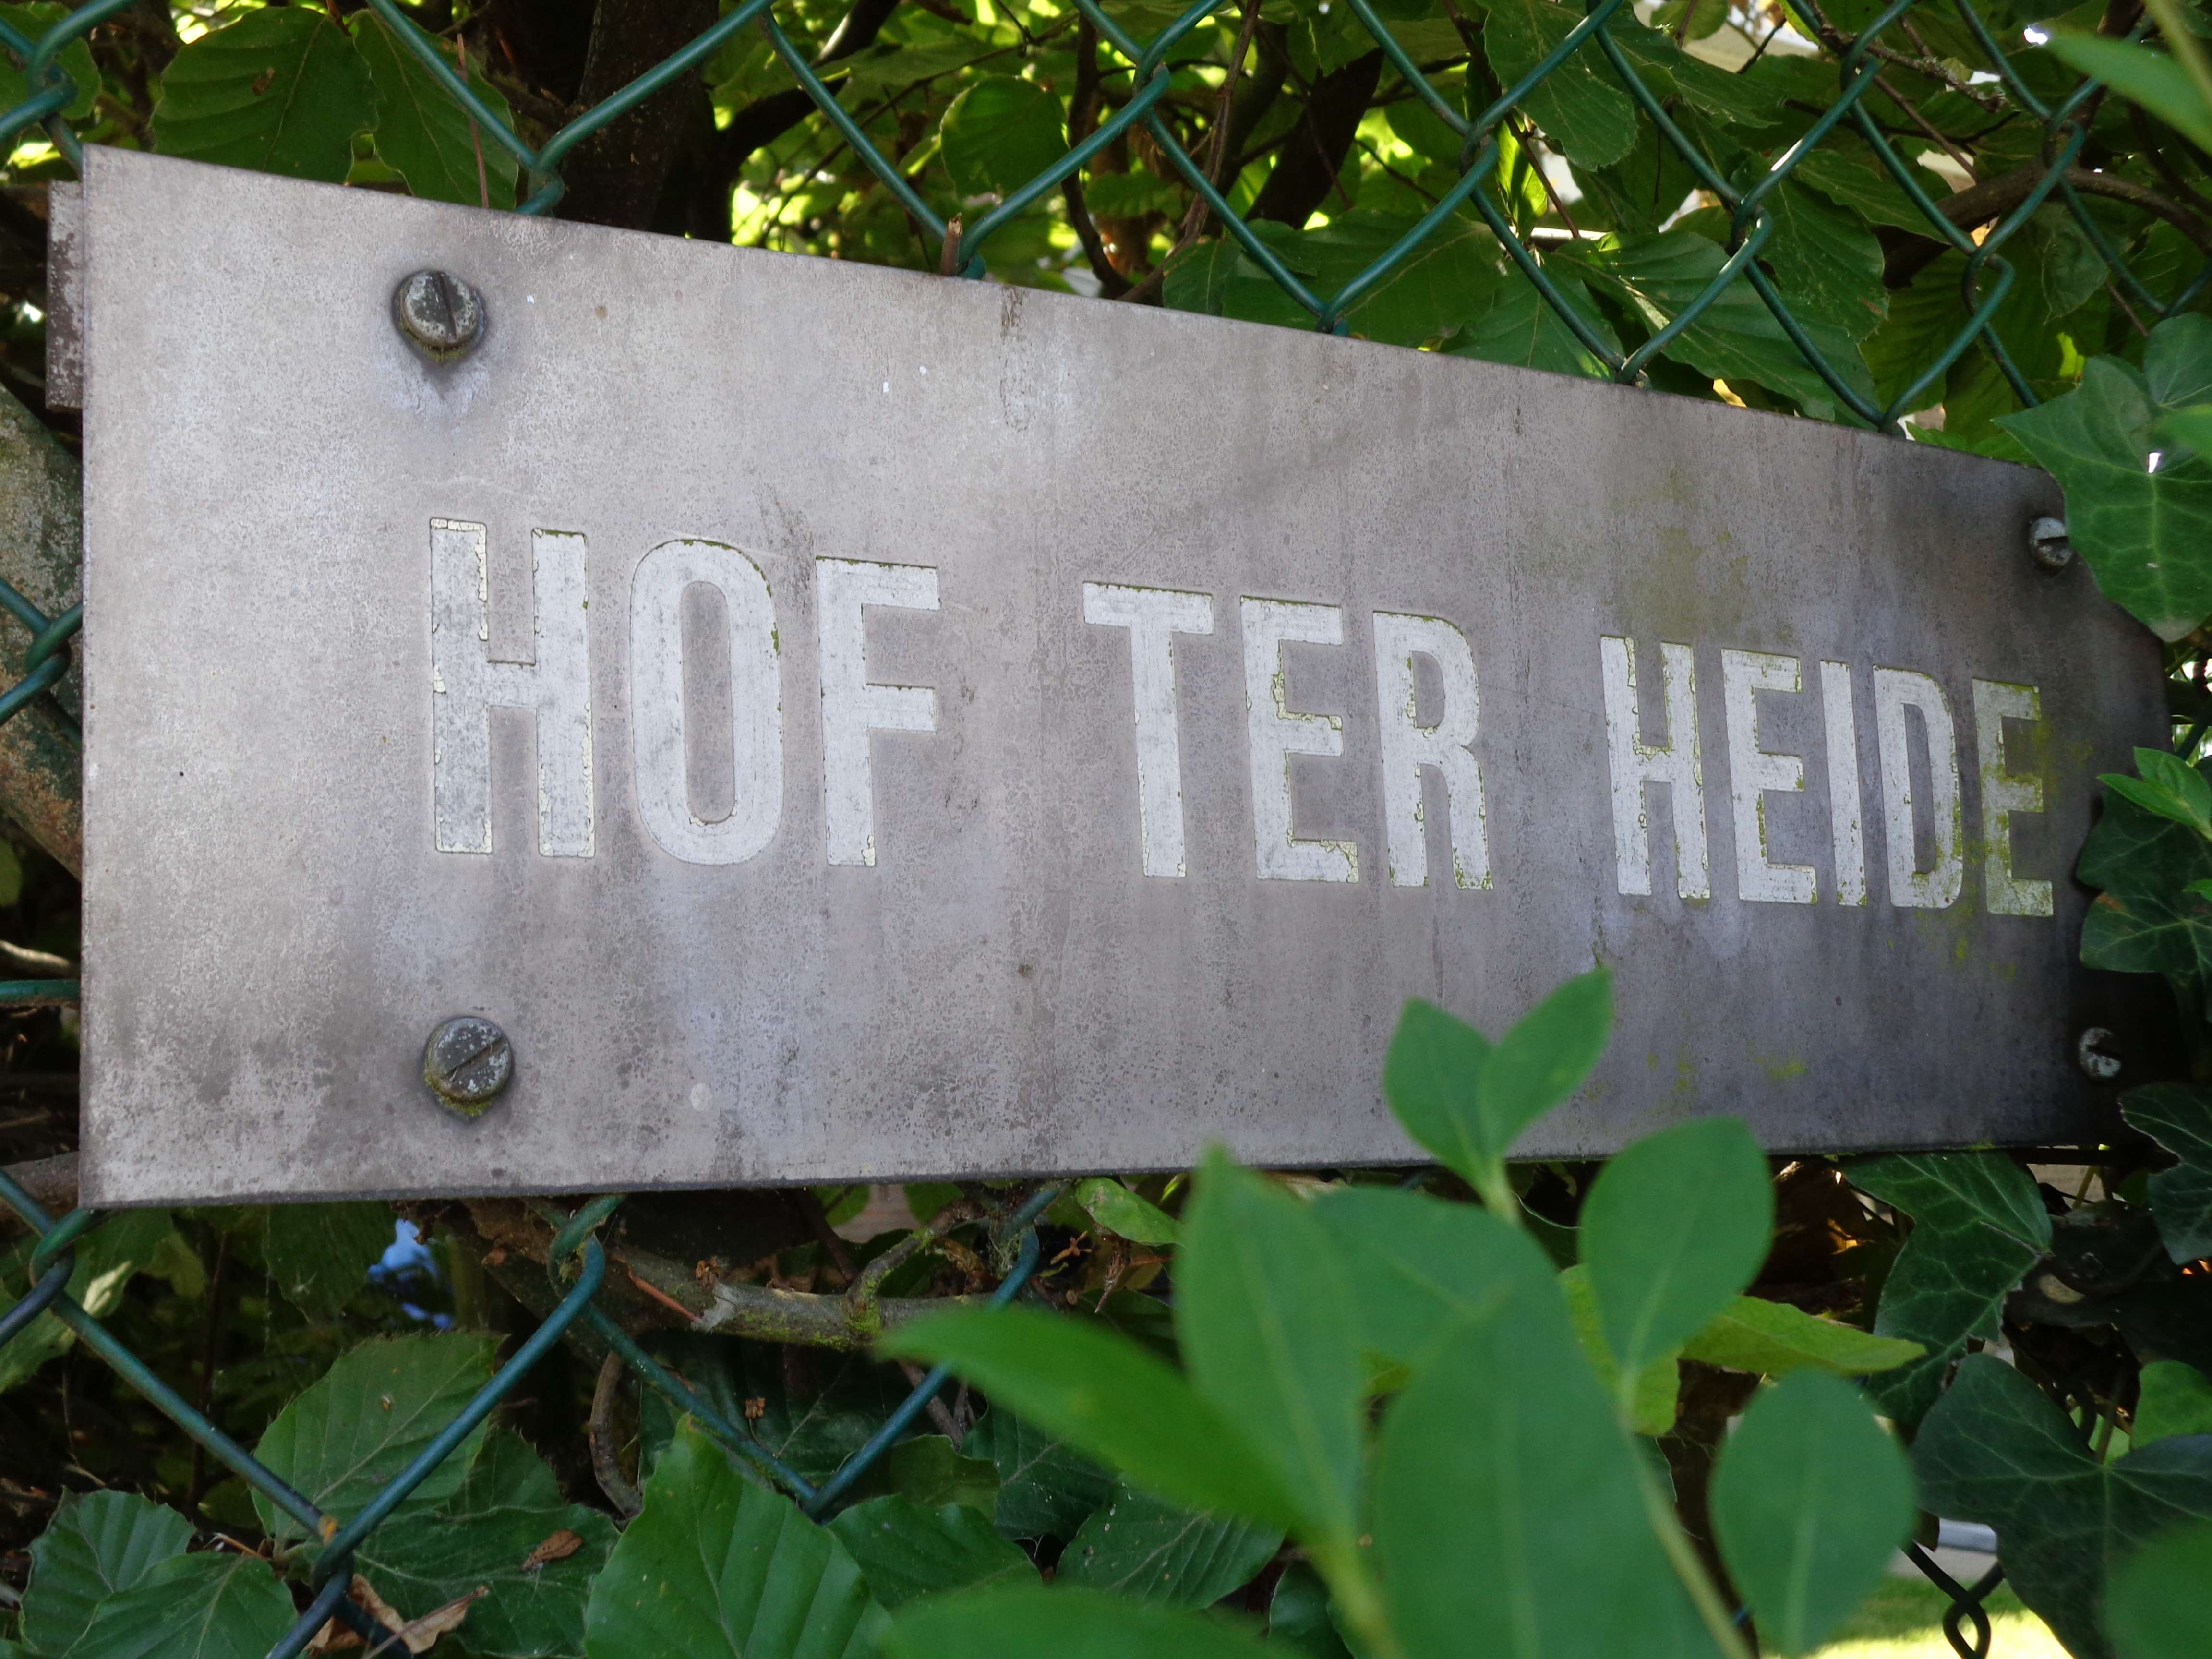 Hof ter Heide